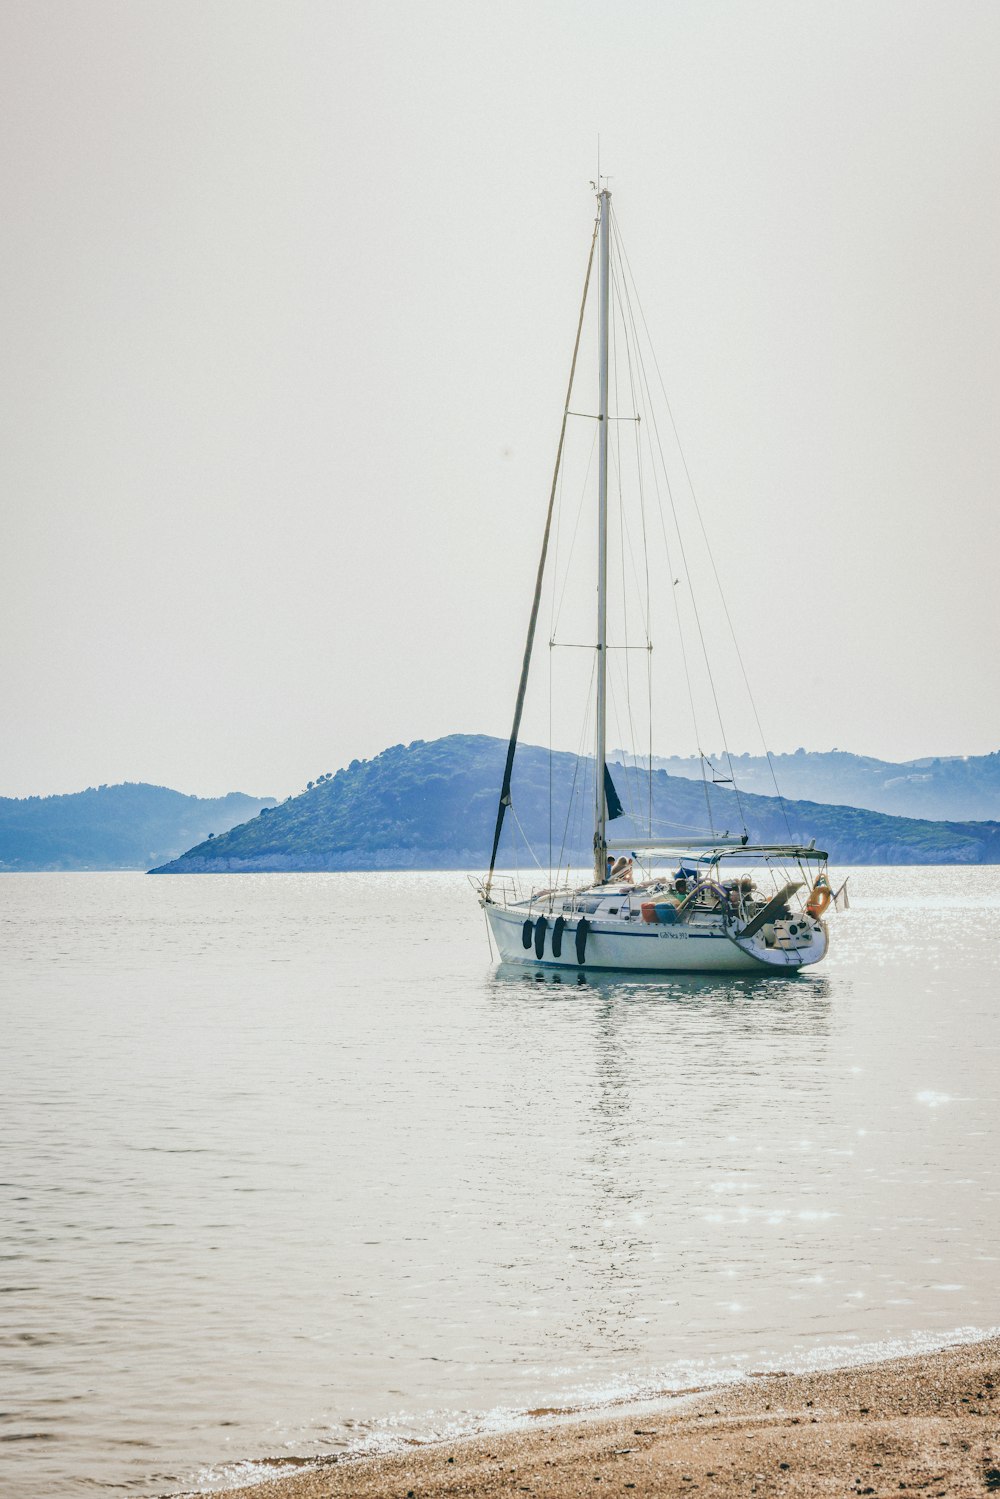 Una barca a vela sull'acqua con le montagne sullo sfondo